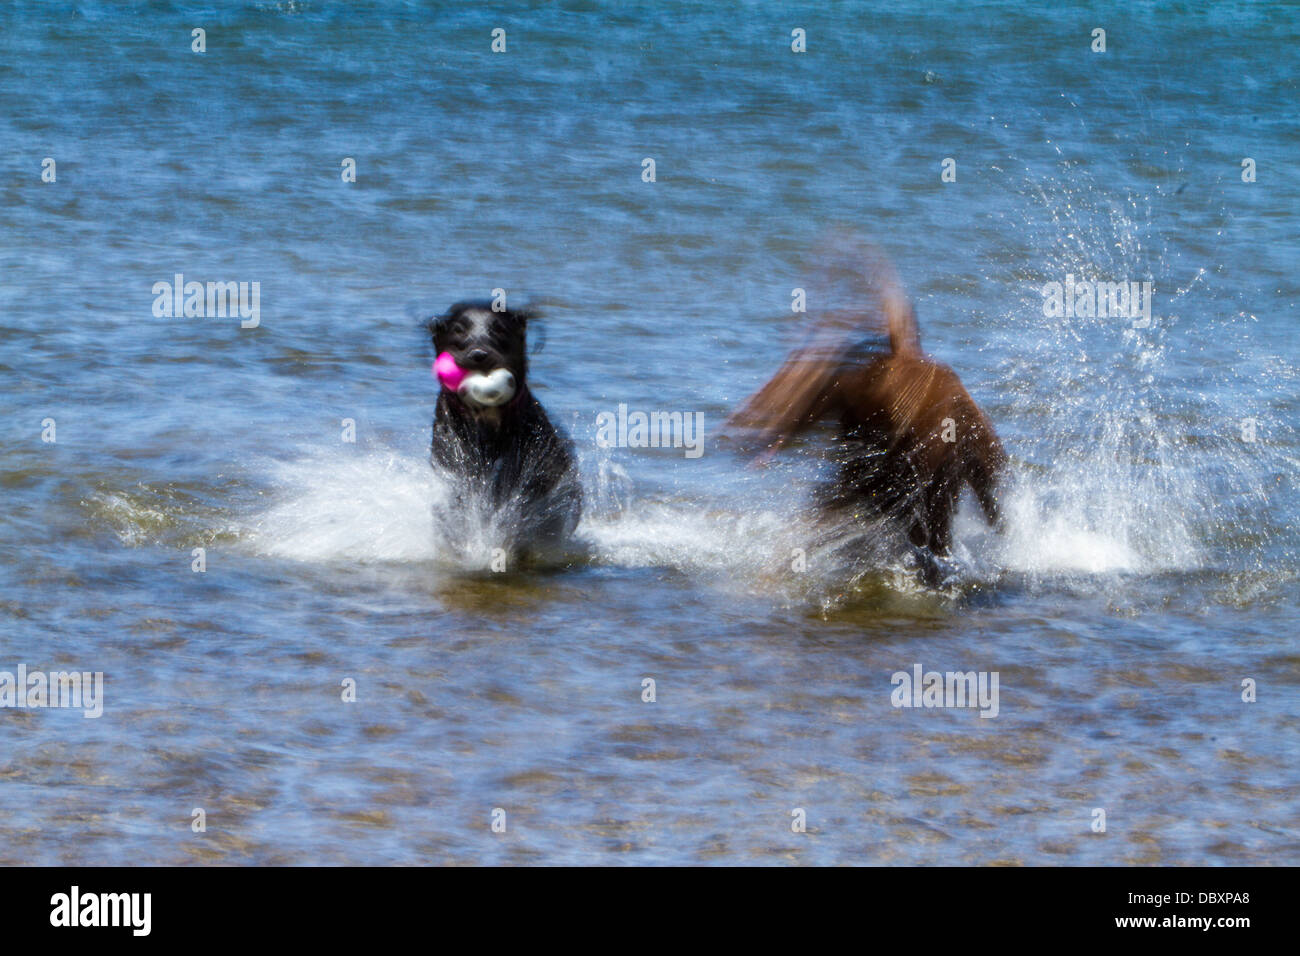 motion-blur-photos-of-labrador-retrievers-splashing-in-a-lake-DBXPA8.jpg